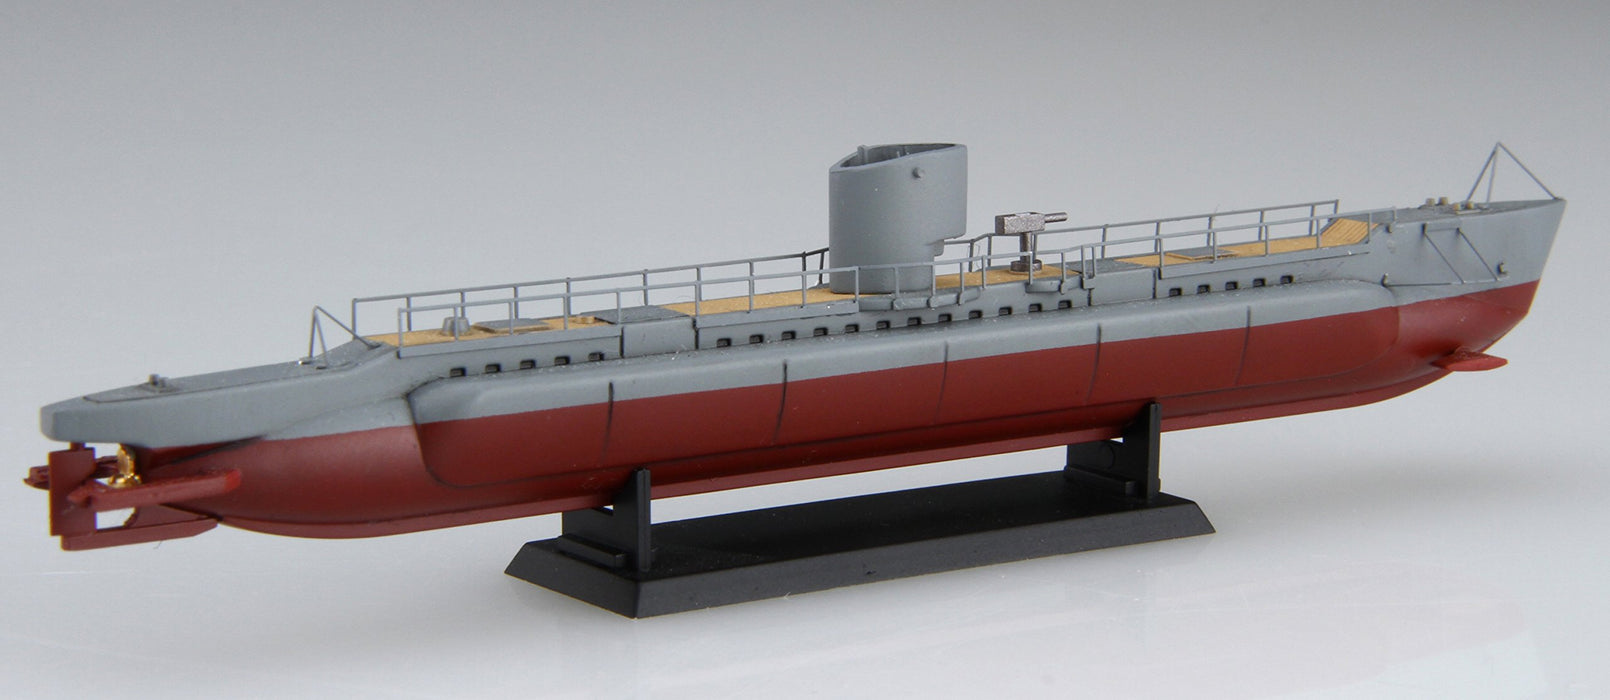 Fujimi modèle 1/350 série spéciale No.14 armée japonaise Type 3 bateau de Transport submersible Maruyu modèle en plastique spécial 14